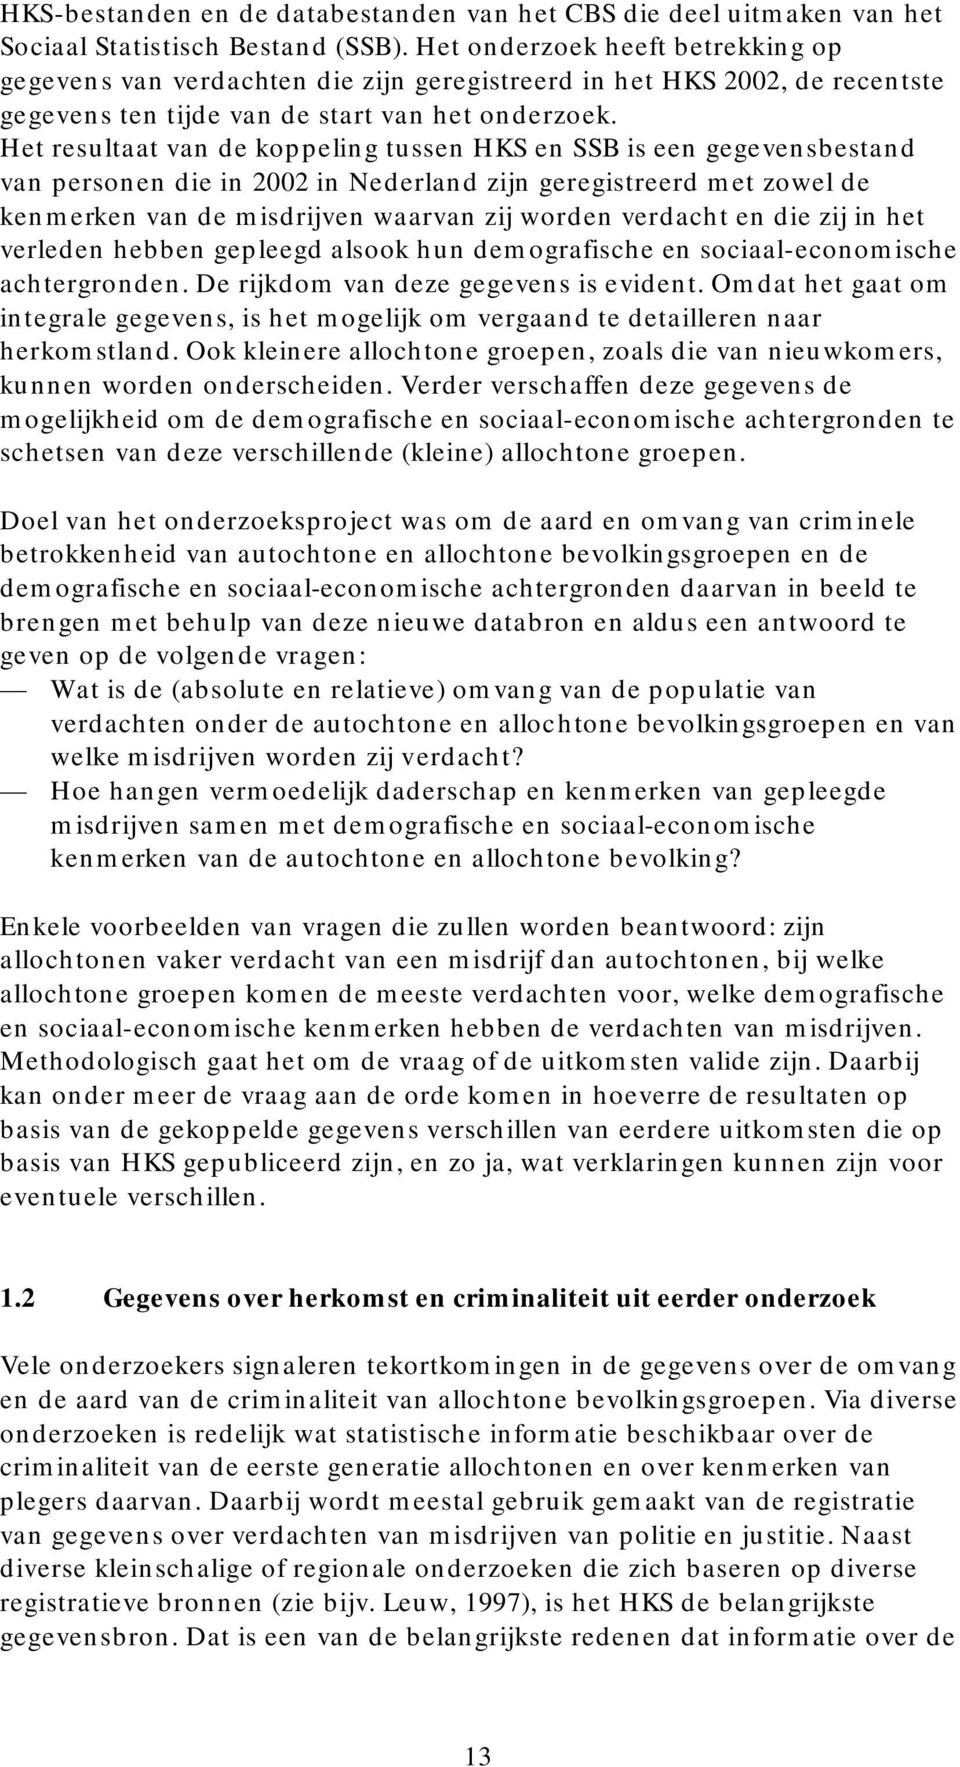 Het resultaat van de koppeling tussen HKS en SSB is een gegevensbestand van personen die in 2002 in Nederland zijn geregistreerd met zowel de kenmerken van de misdrijven waarvan zij worden verdacht